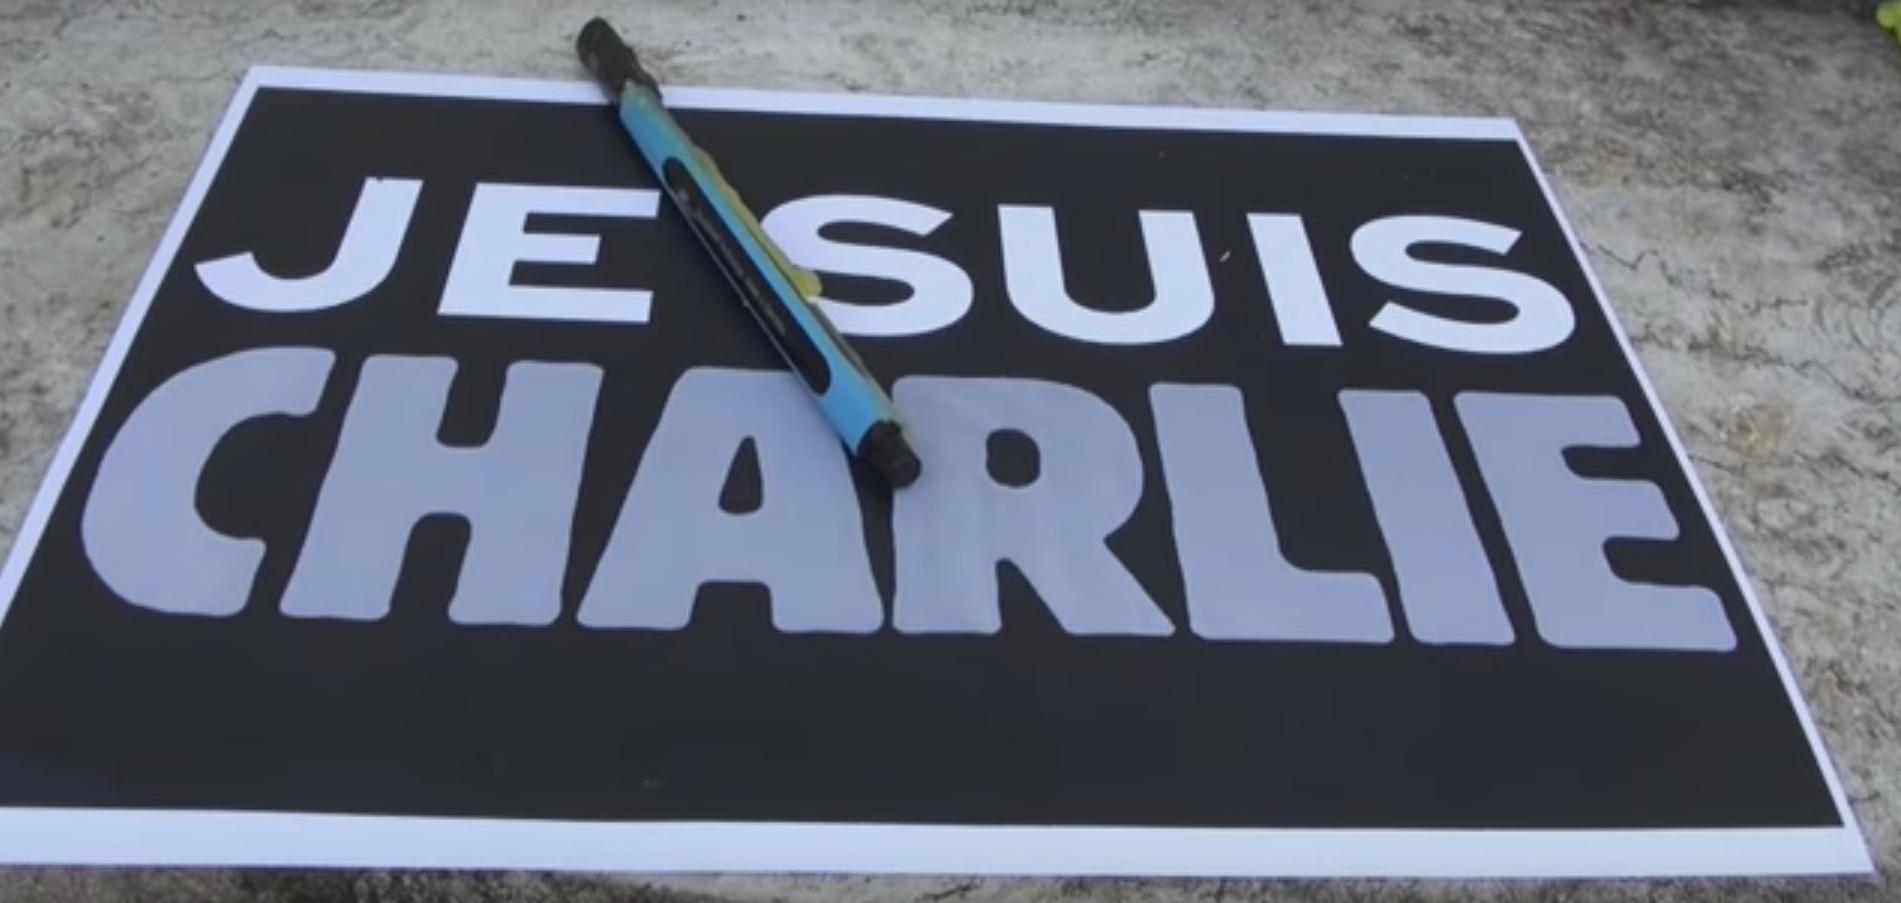 Після теракту в Charlie Hebdo французькі ЗМІ не злякались: Тетяна Огаркова